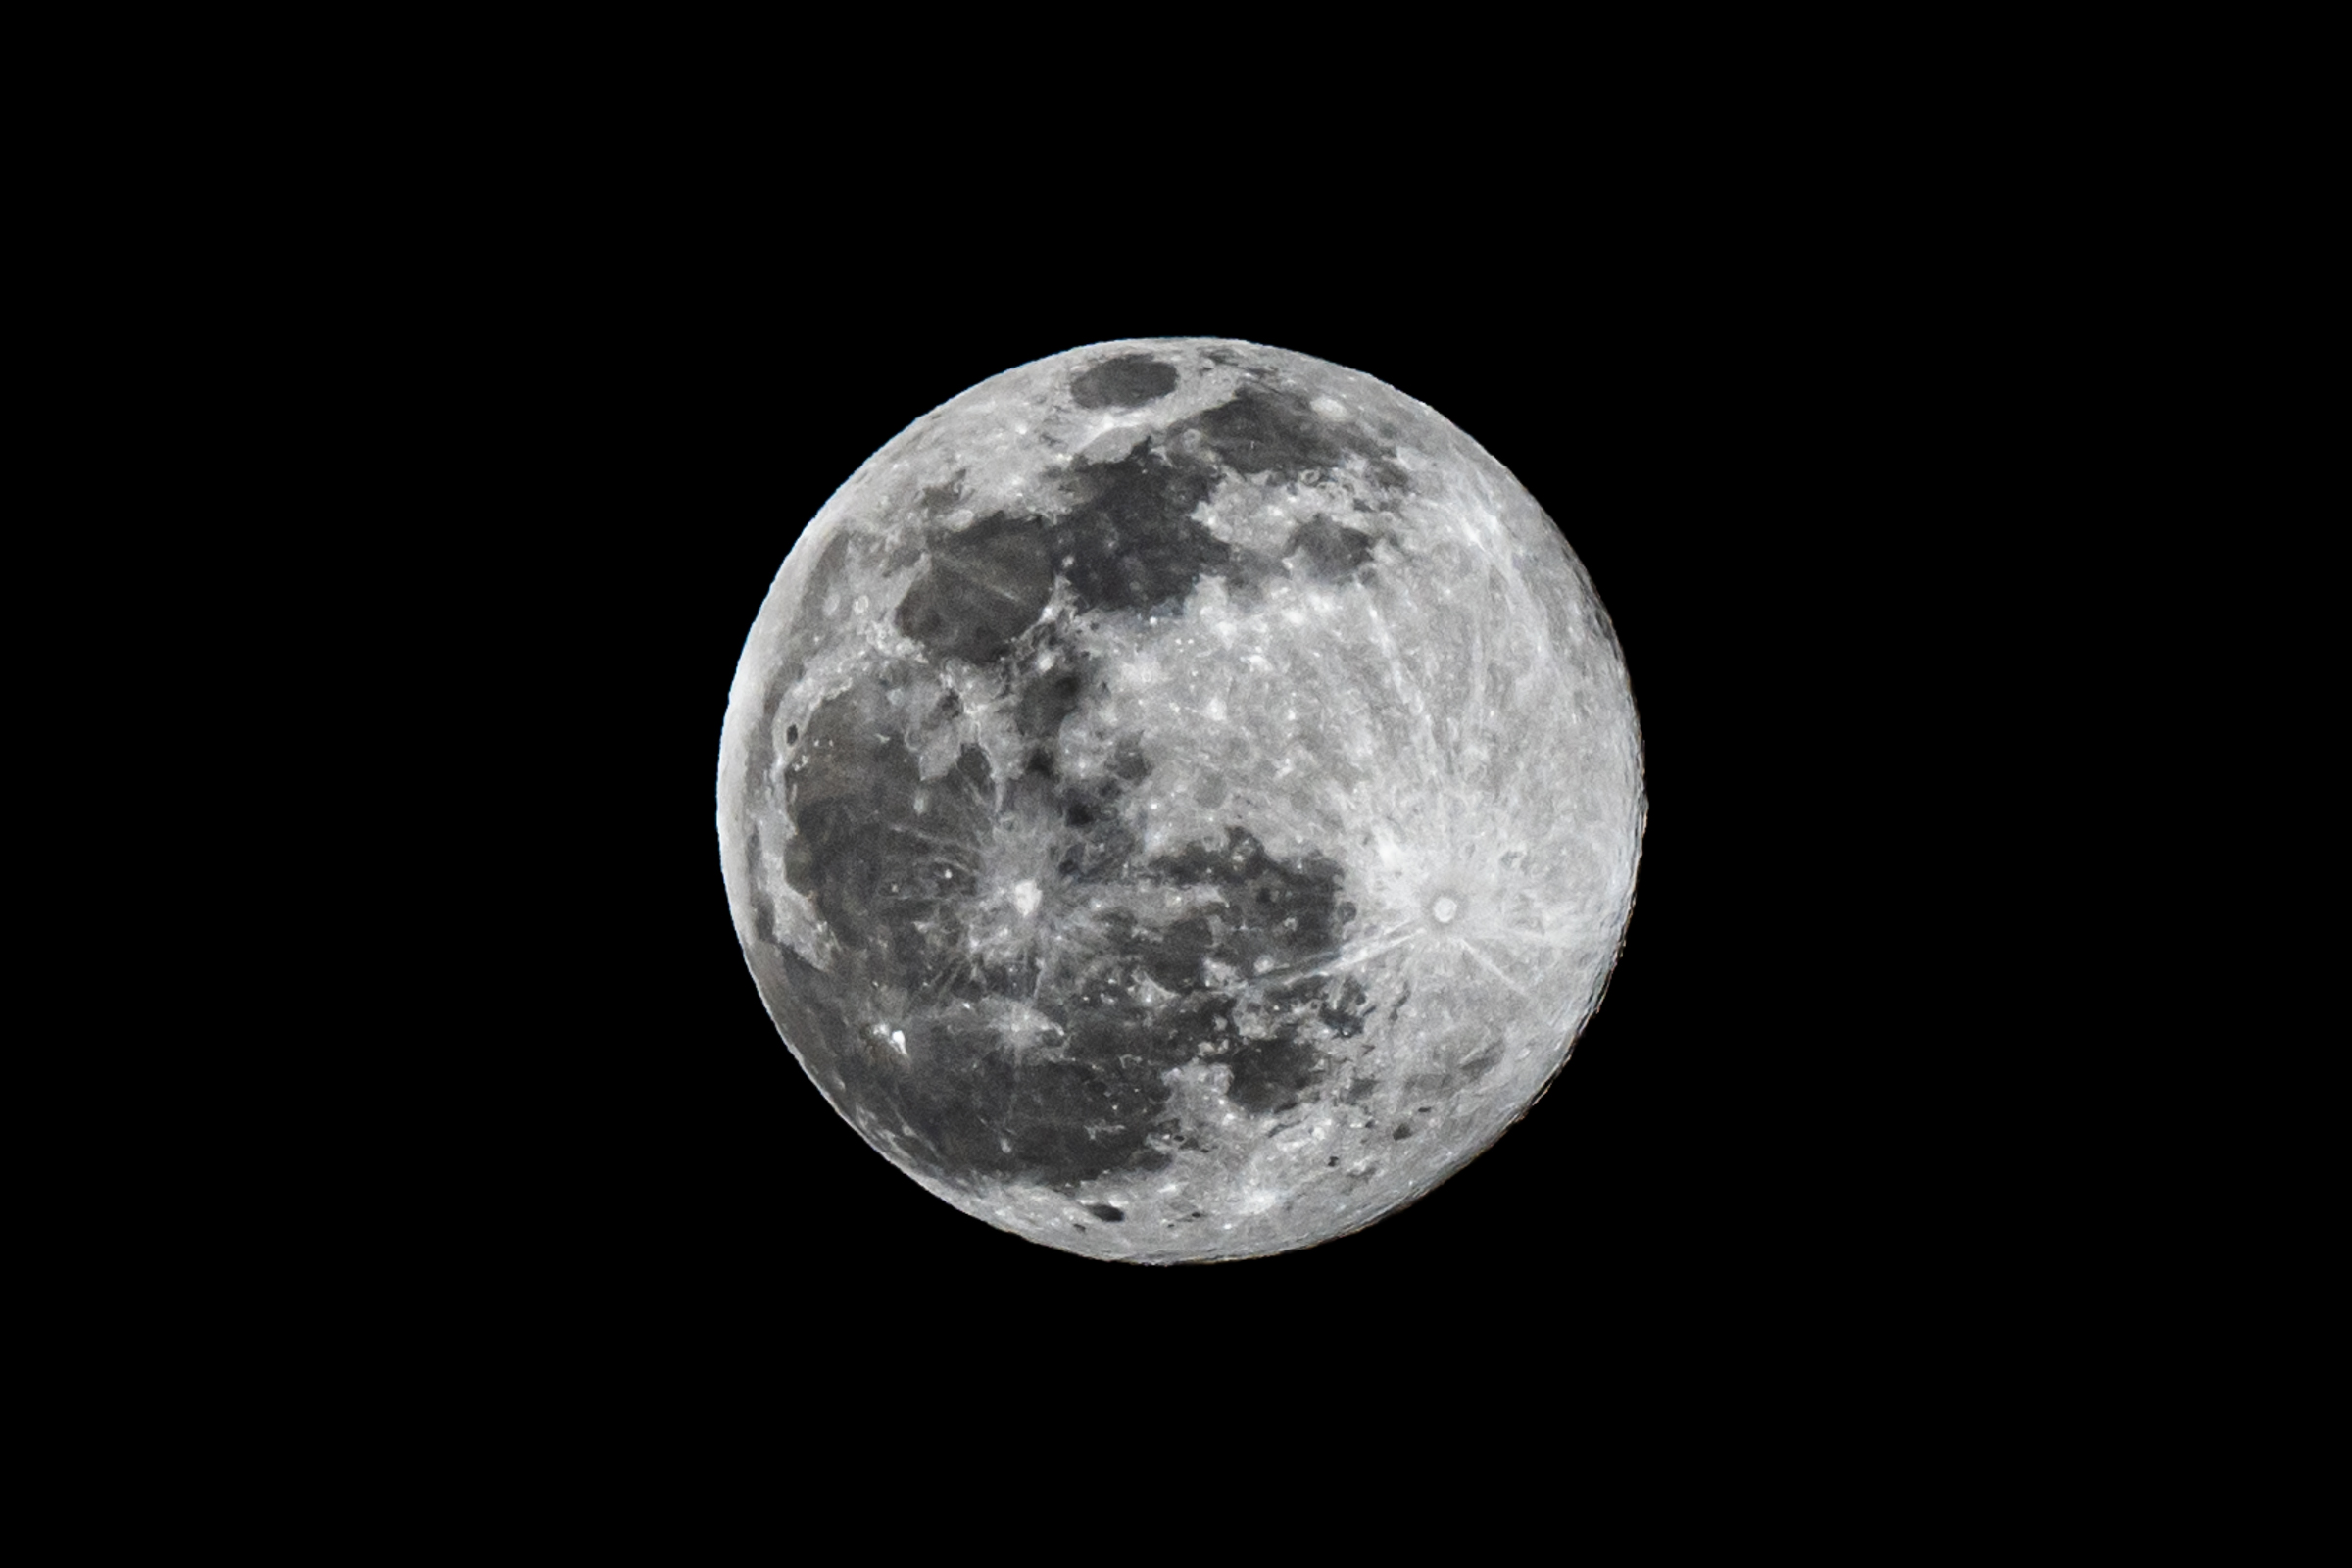 10日の夜は中秋の名月 9月の満月 ハーベストムーン とぴったり重なるぞ ほぼ日本全土でお月見チャンスか ロケットニュース24